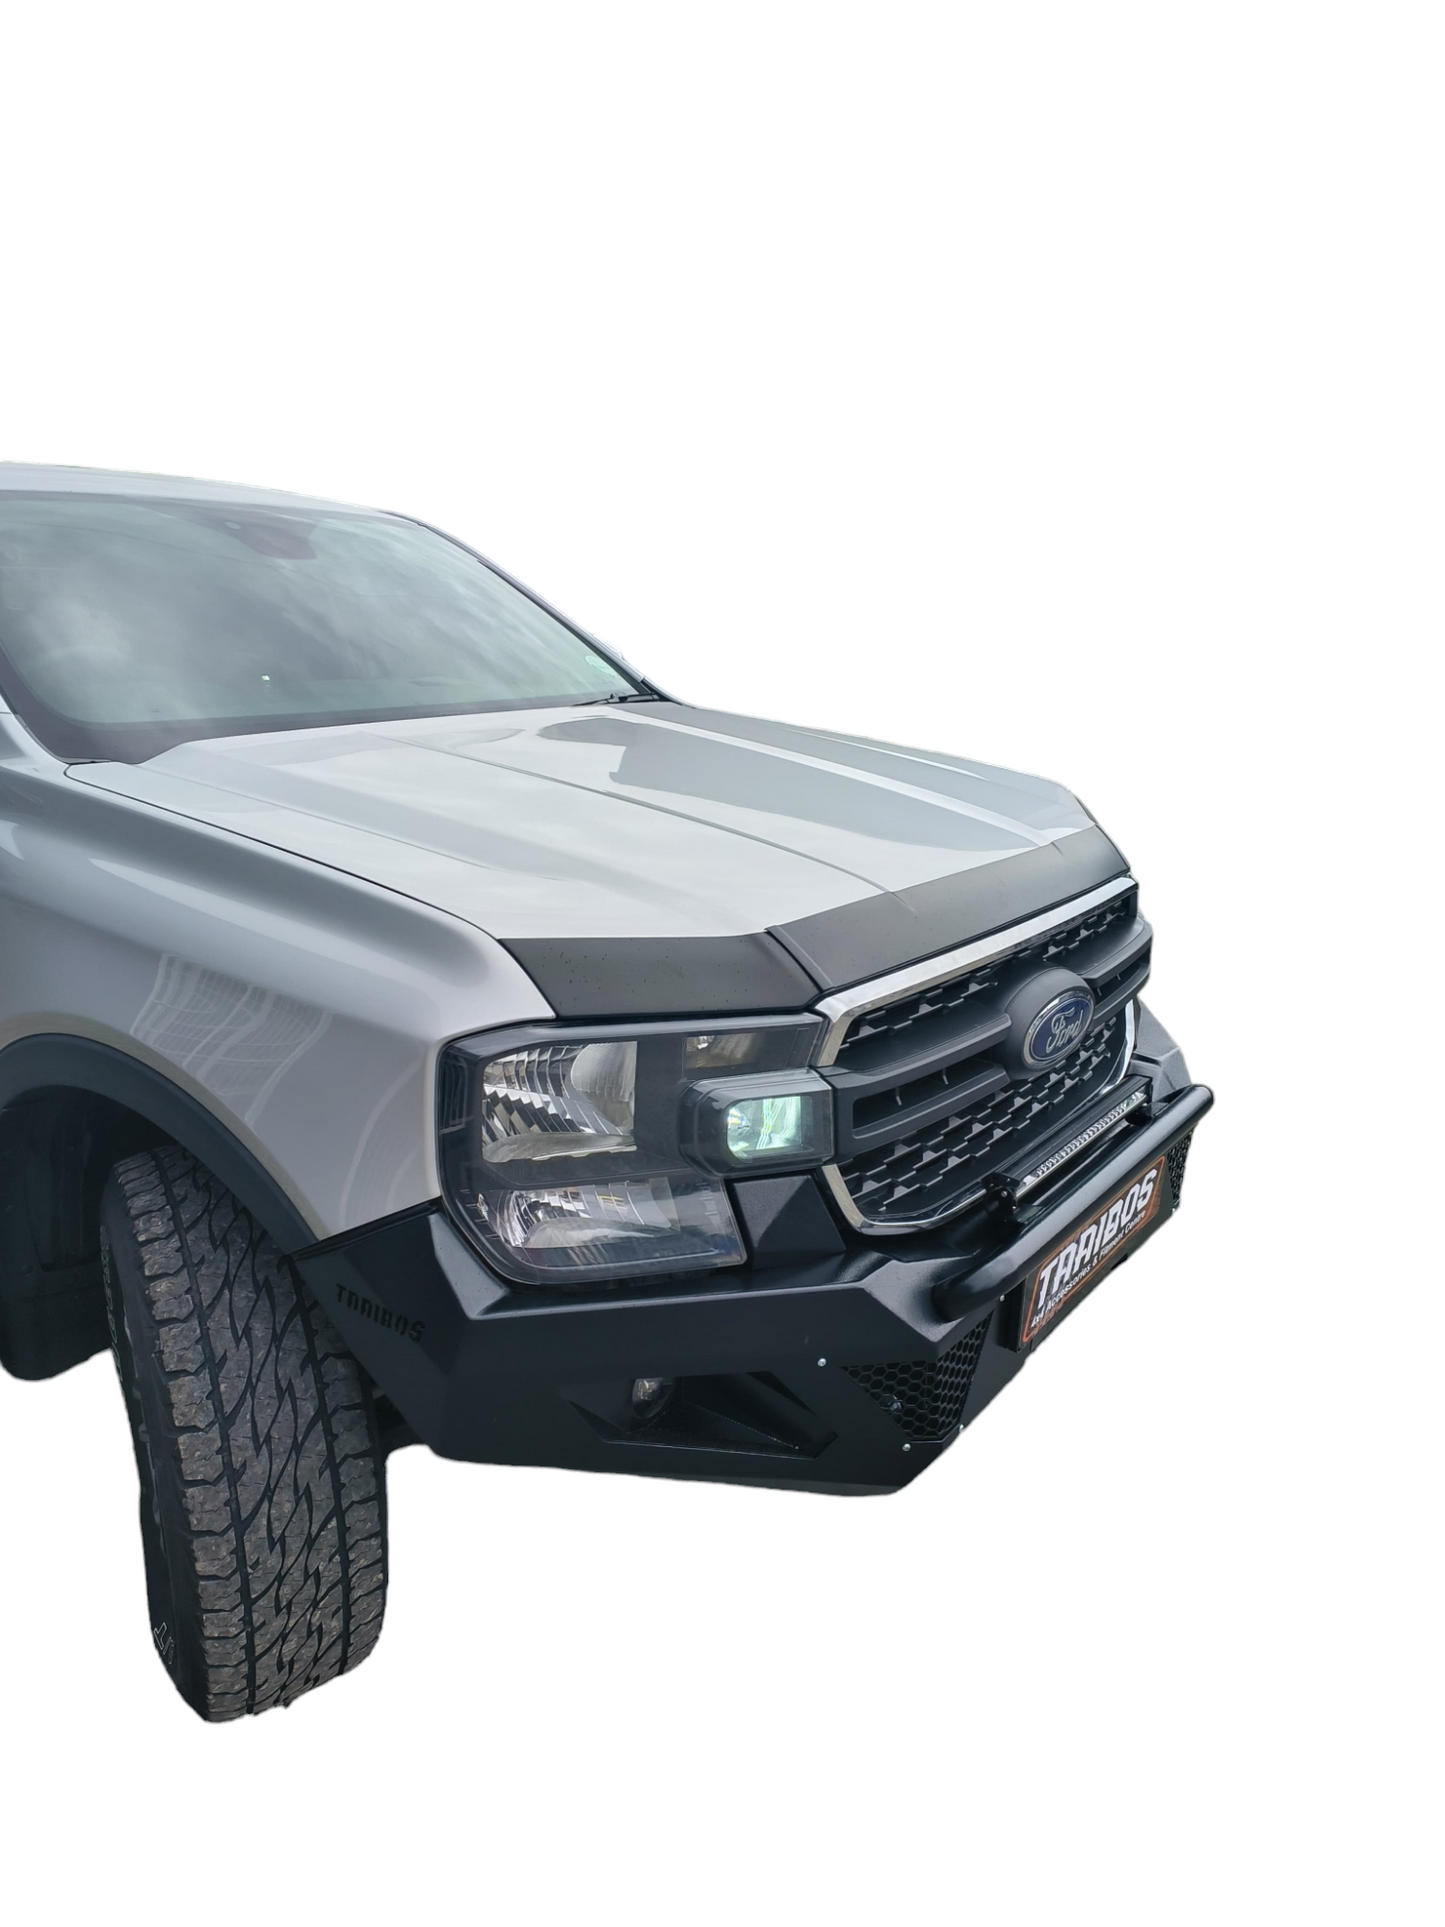 2023 next gen Ford Ranger front replacement bumper